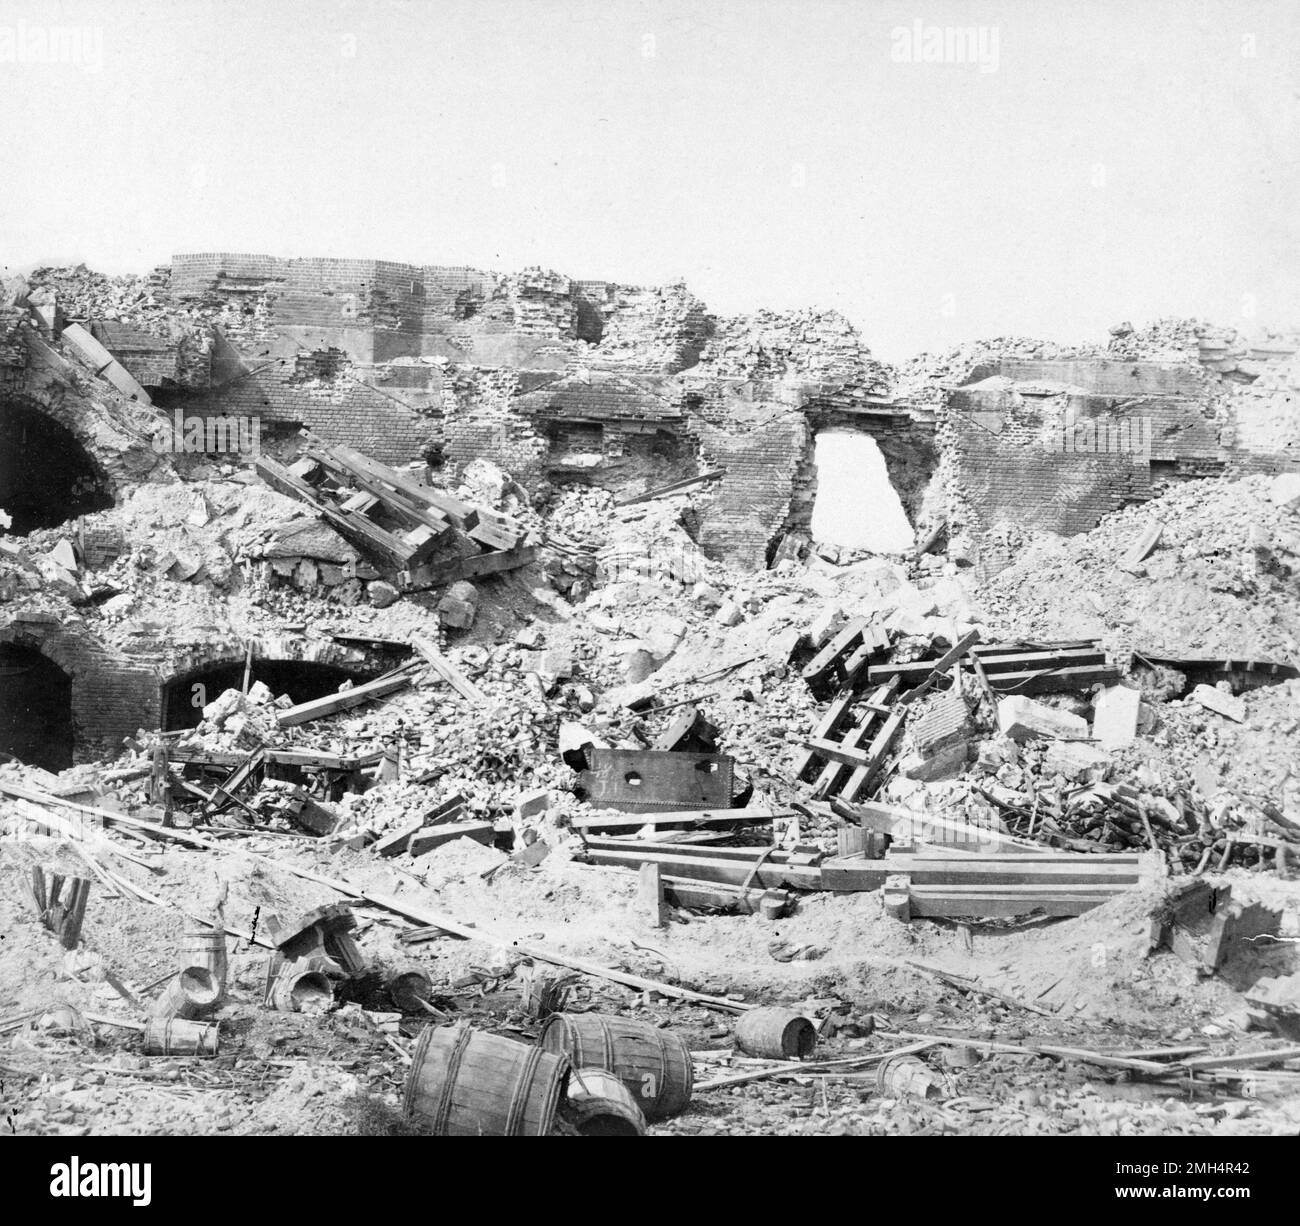 Las ruinas de Fort Sumter después es capturado por el Ejército Confederado. El bombardeo confederado y la captura de Fort Sumter fue la primera batalla en la guerra estadounidense del CIIL. Foto de stock